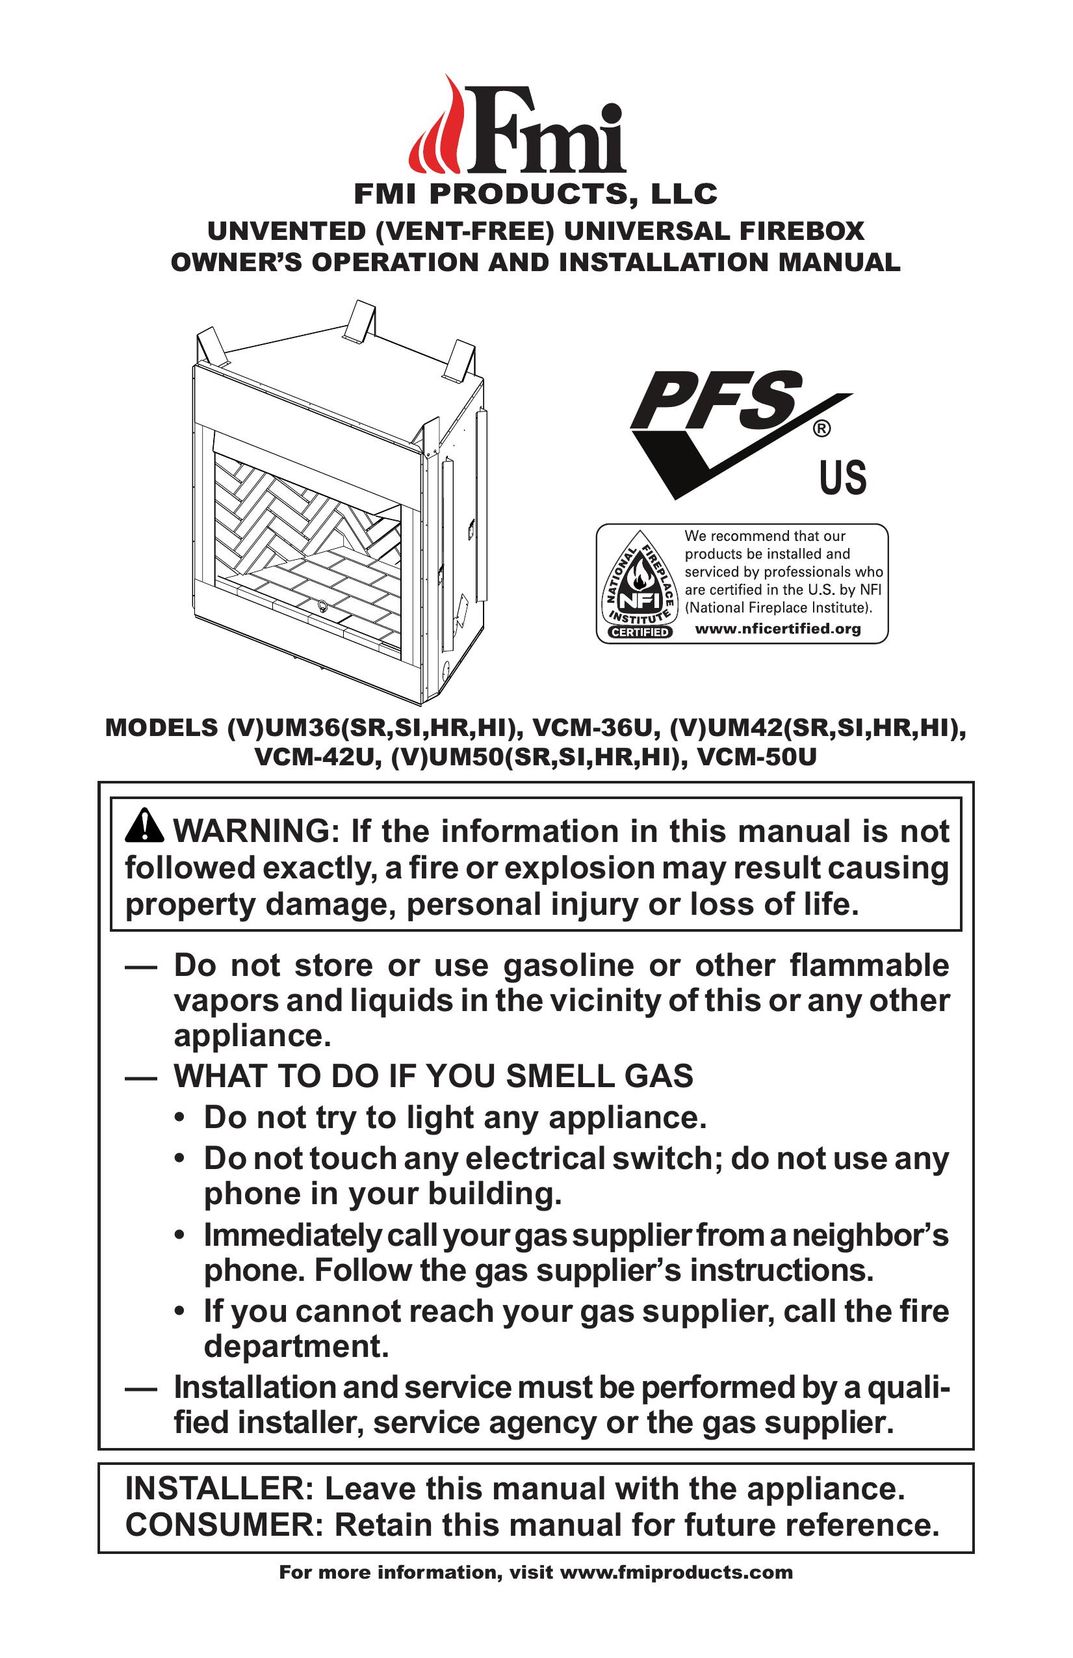 FMI (V)UM42(SR,SI,HR,HI) Indoor Fireplace User Manual (Page 1)